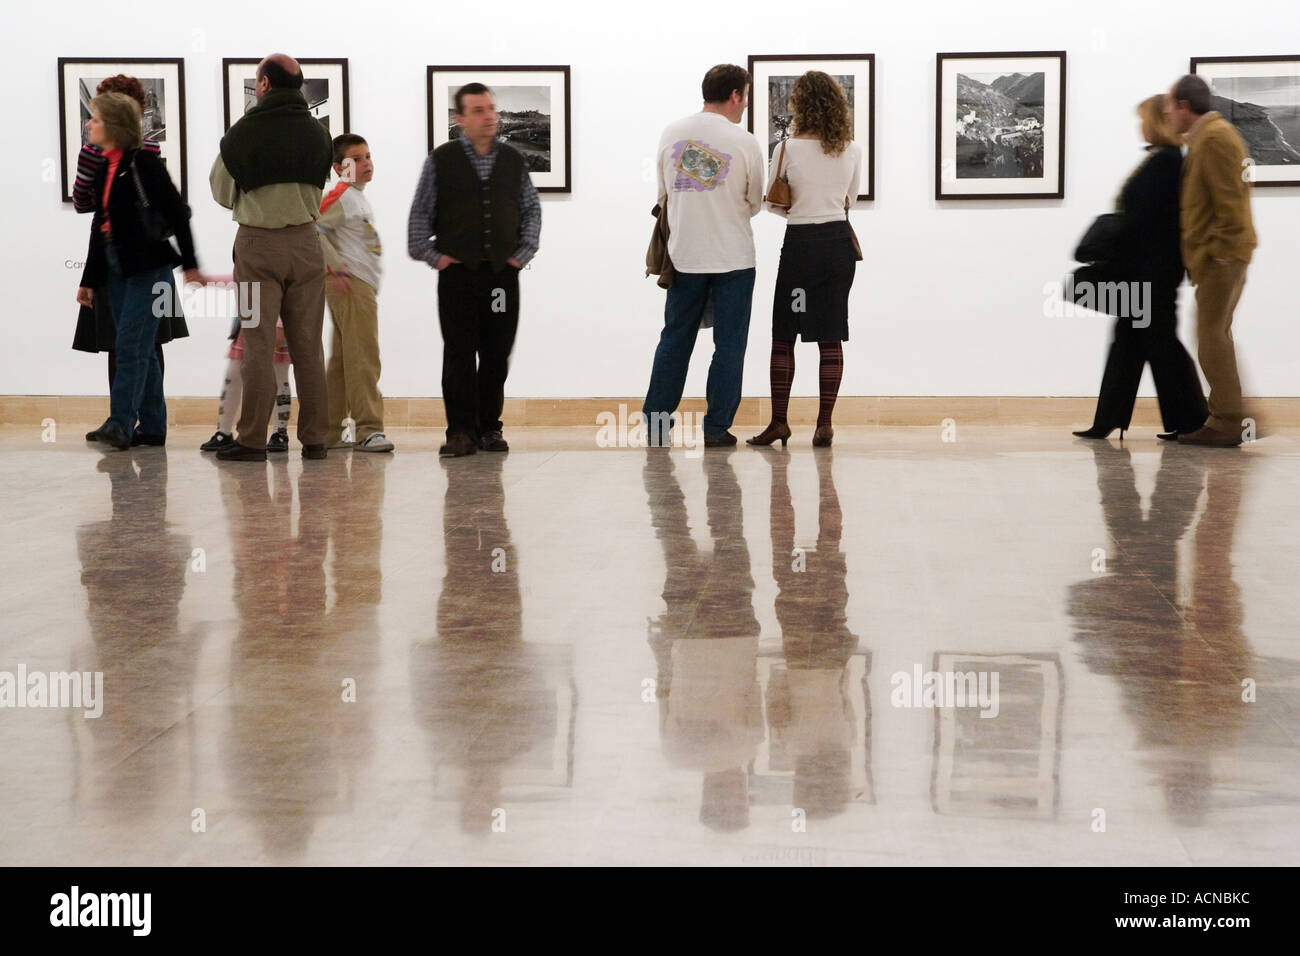 Les personnes qui visitent une exposition de photos, Séville, Espagne Banque D'Images